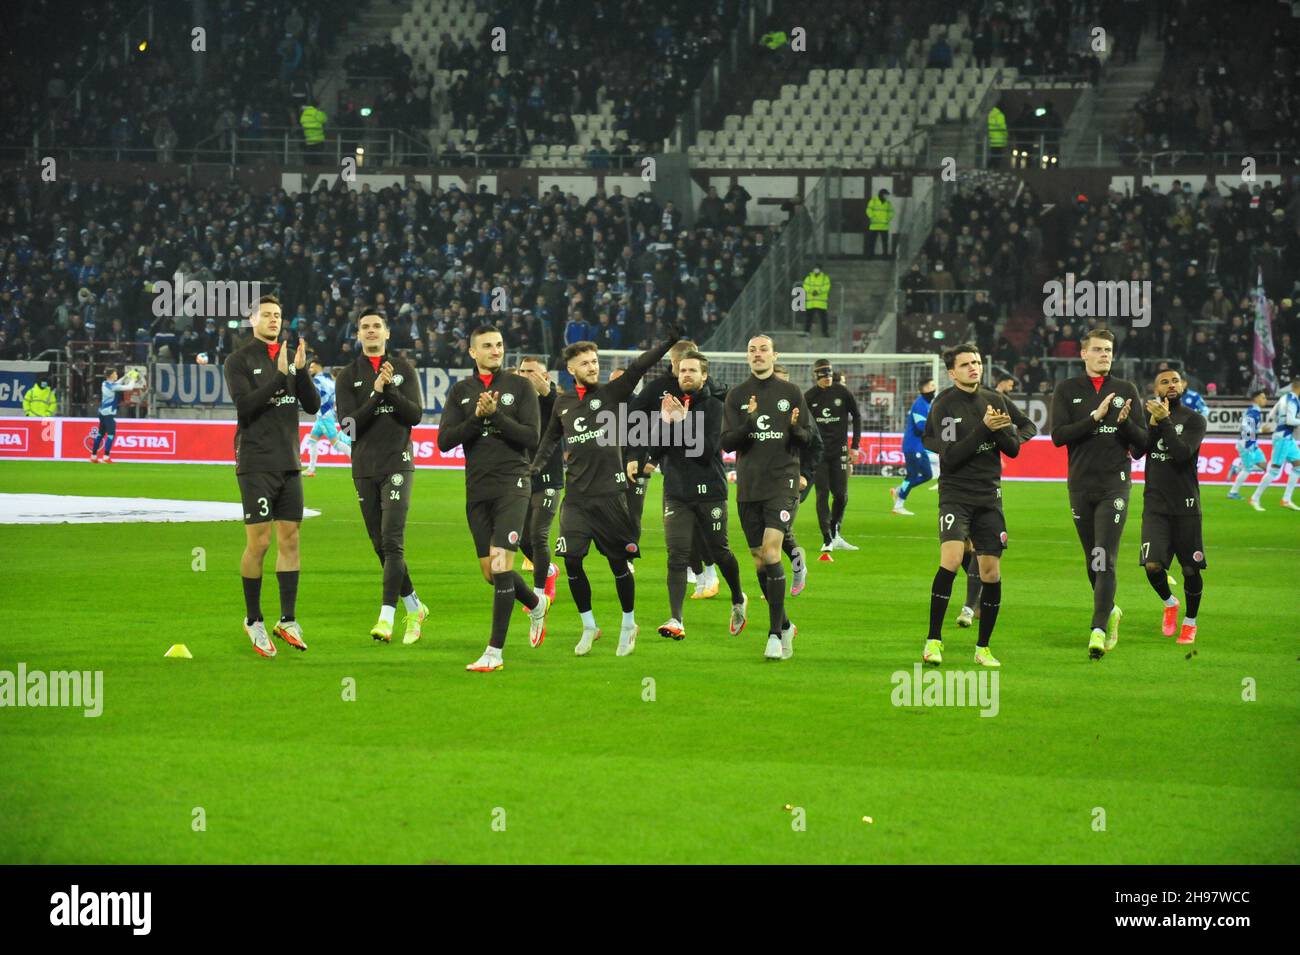 Einlauf der Mannschaft des FC St. Pauli vor dem Match gegen den FC Schalke 04 am Millerntor, Hamburg, Deutschland Stock Photo